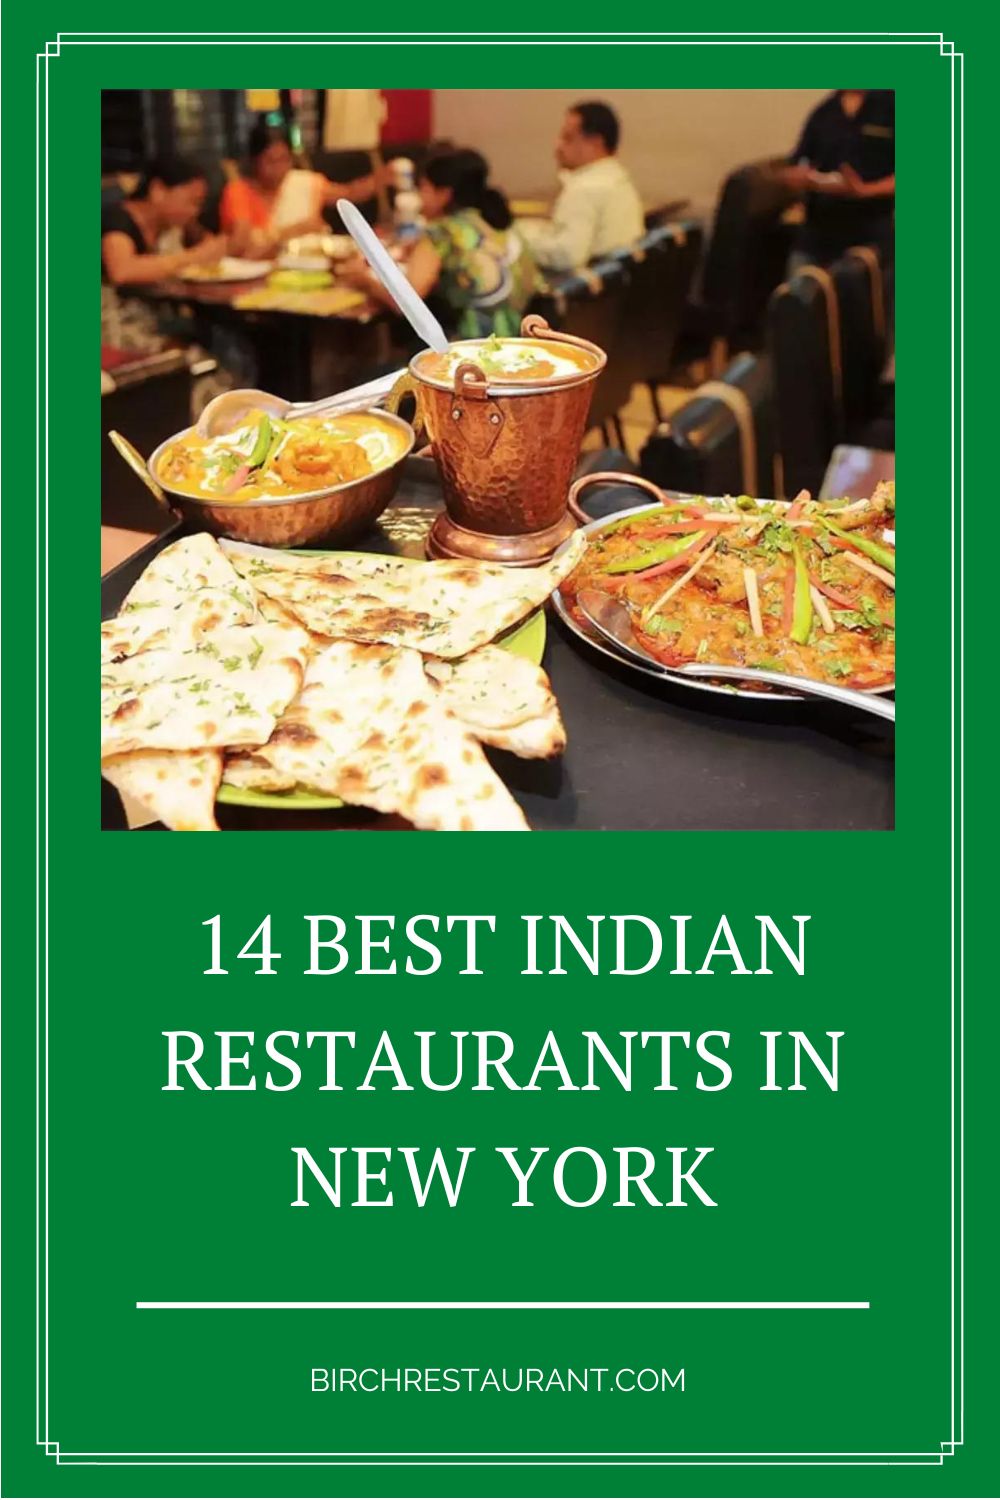 Indian Restaurants in New York